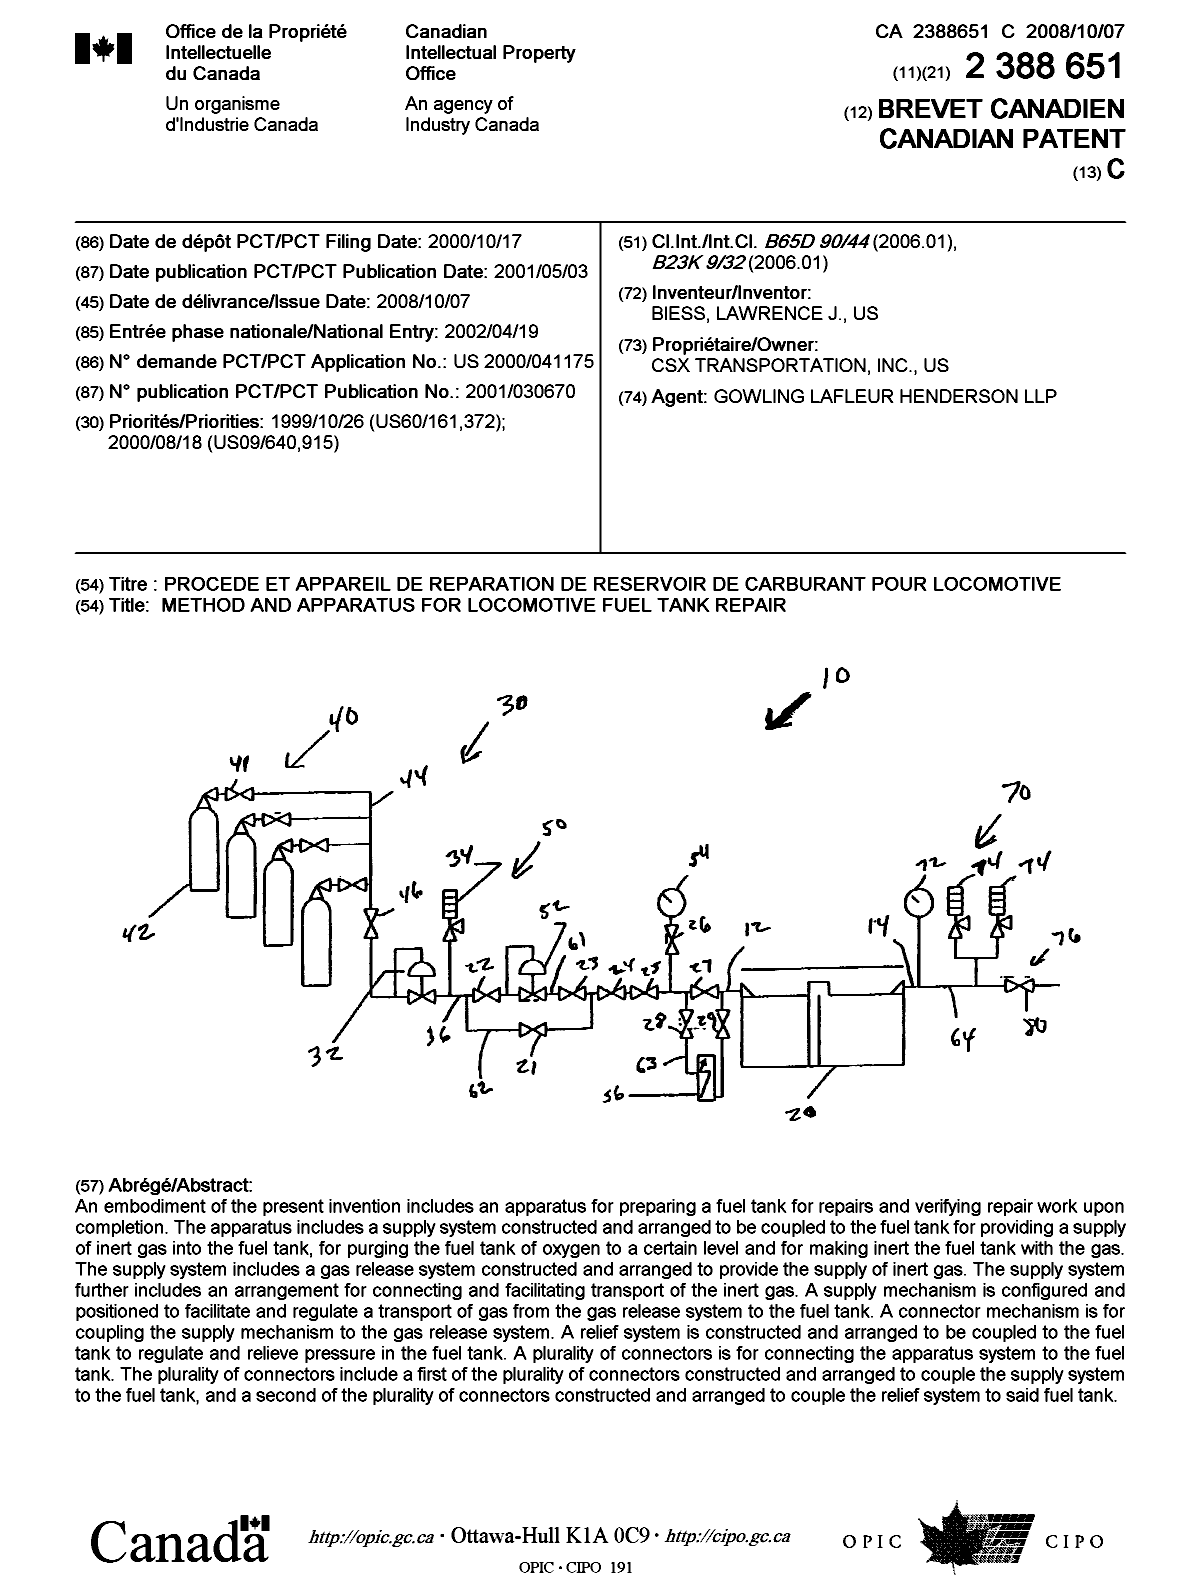 Document de brevet canadien 2388651. Page couverture 20071223. Image 1 de 1